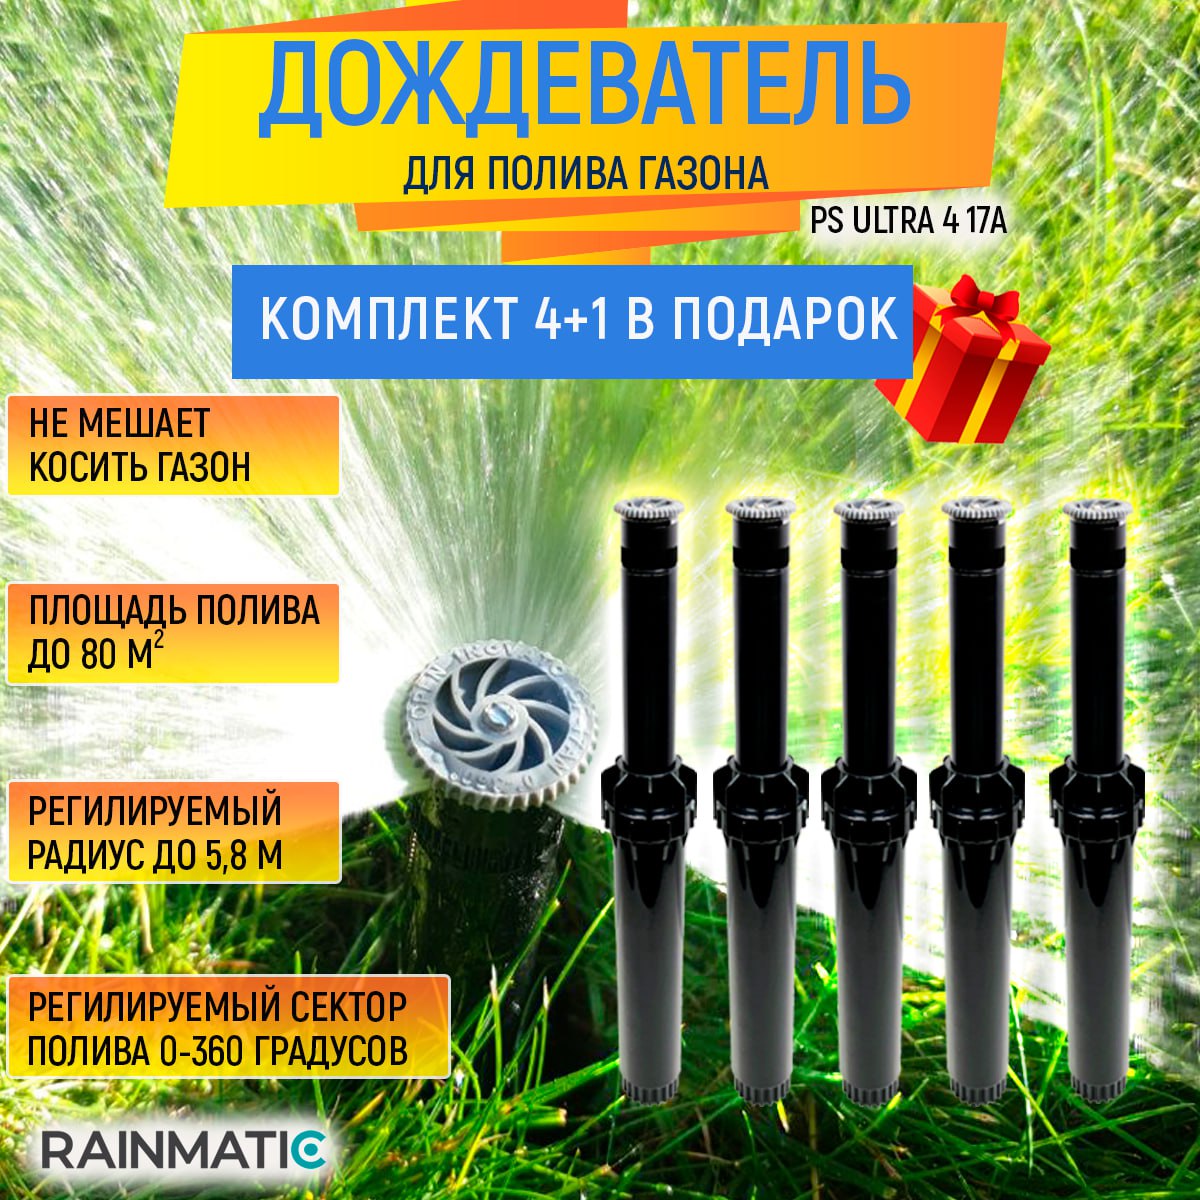 Дождеватель RAINMATIC PS ULTRA 4 17A, комплект 5шт - купить в Москве, цены на Мегамаркет | 600009390851